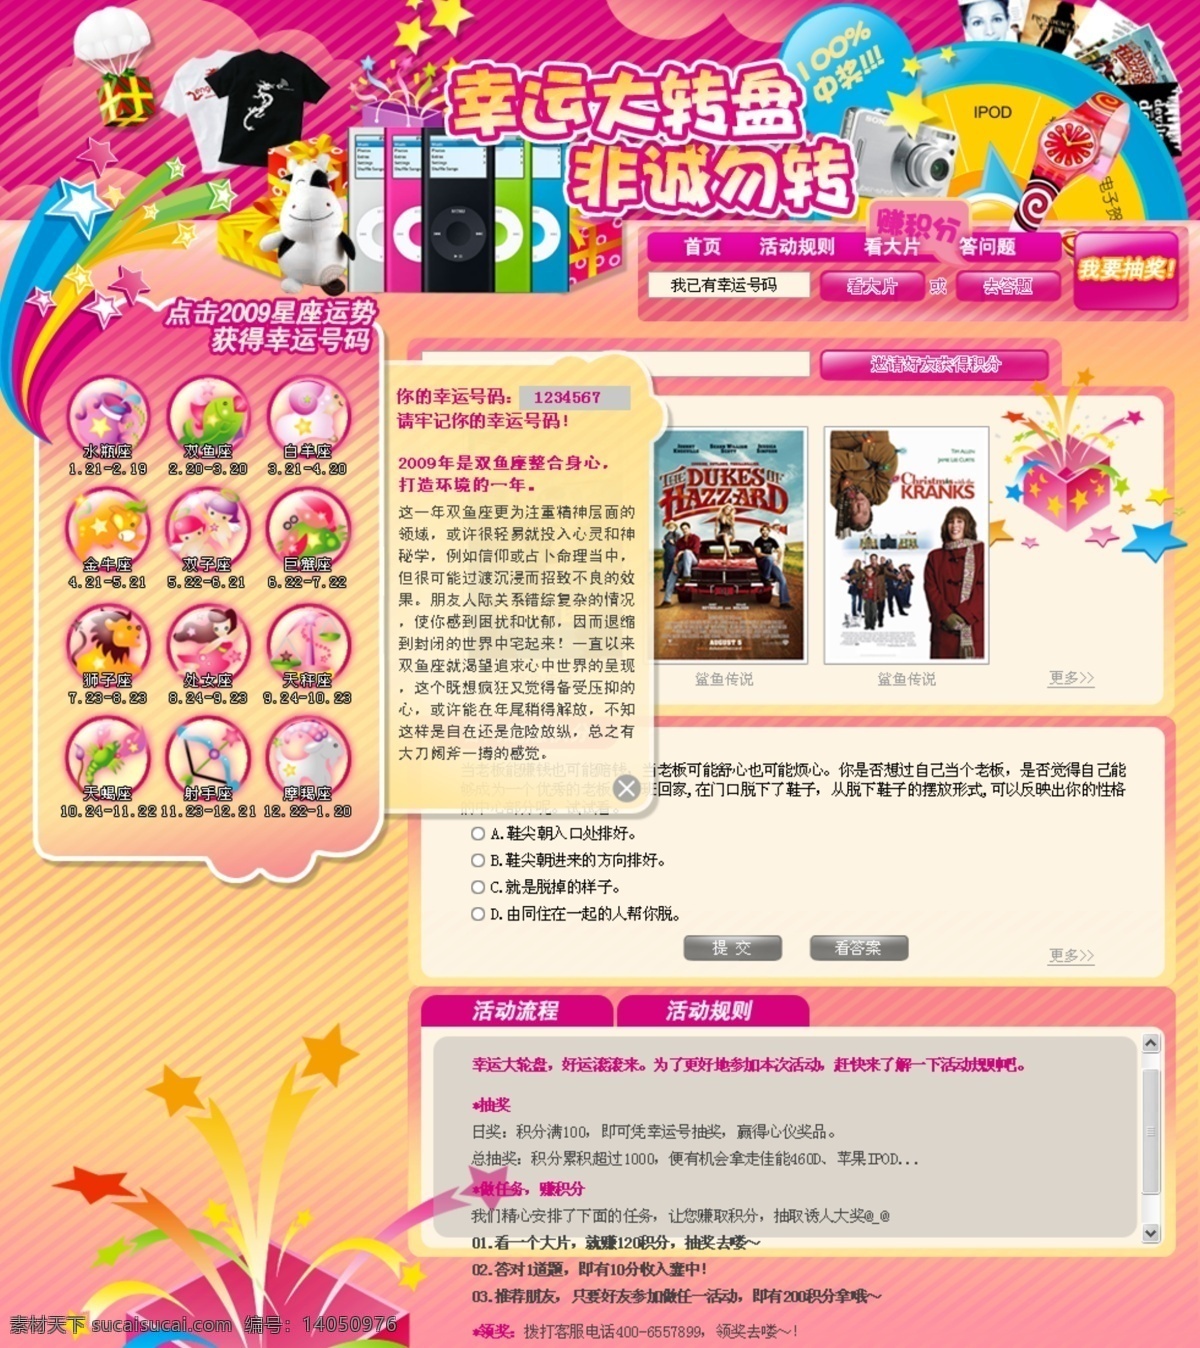 mp3 活动 数码产品 网页模板 源文件 照相机 中文模版 专题页面 专题 页面 模板下载 海报 其他海报设计